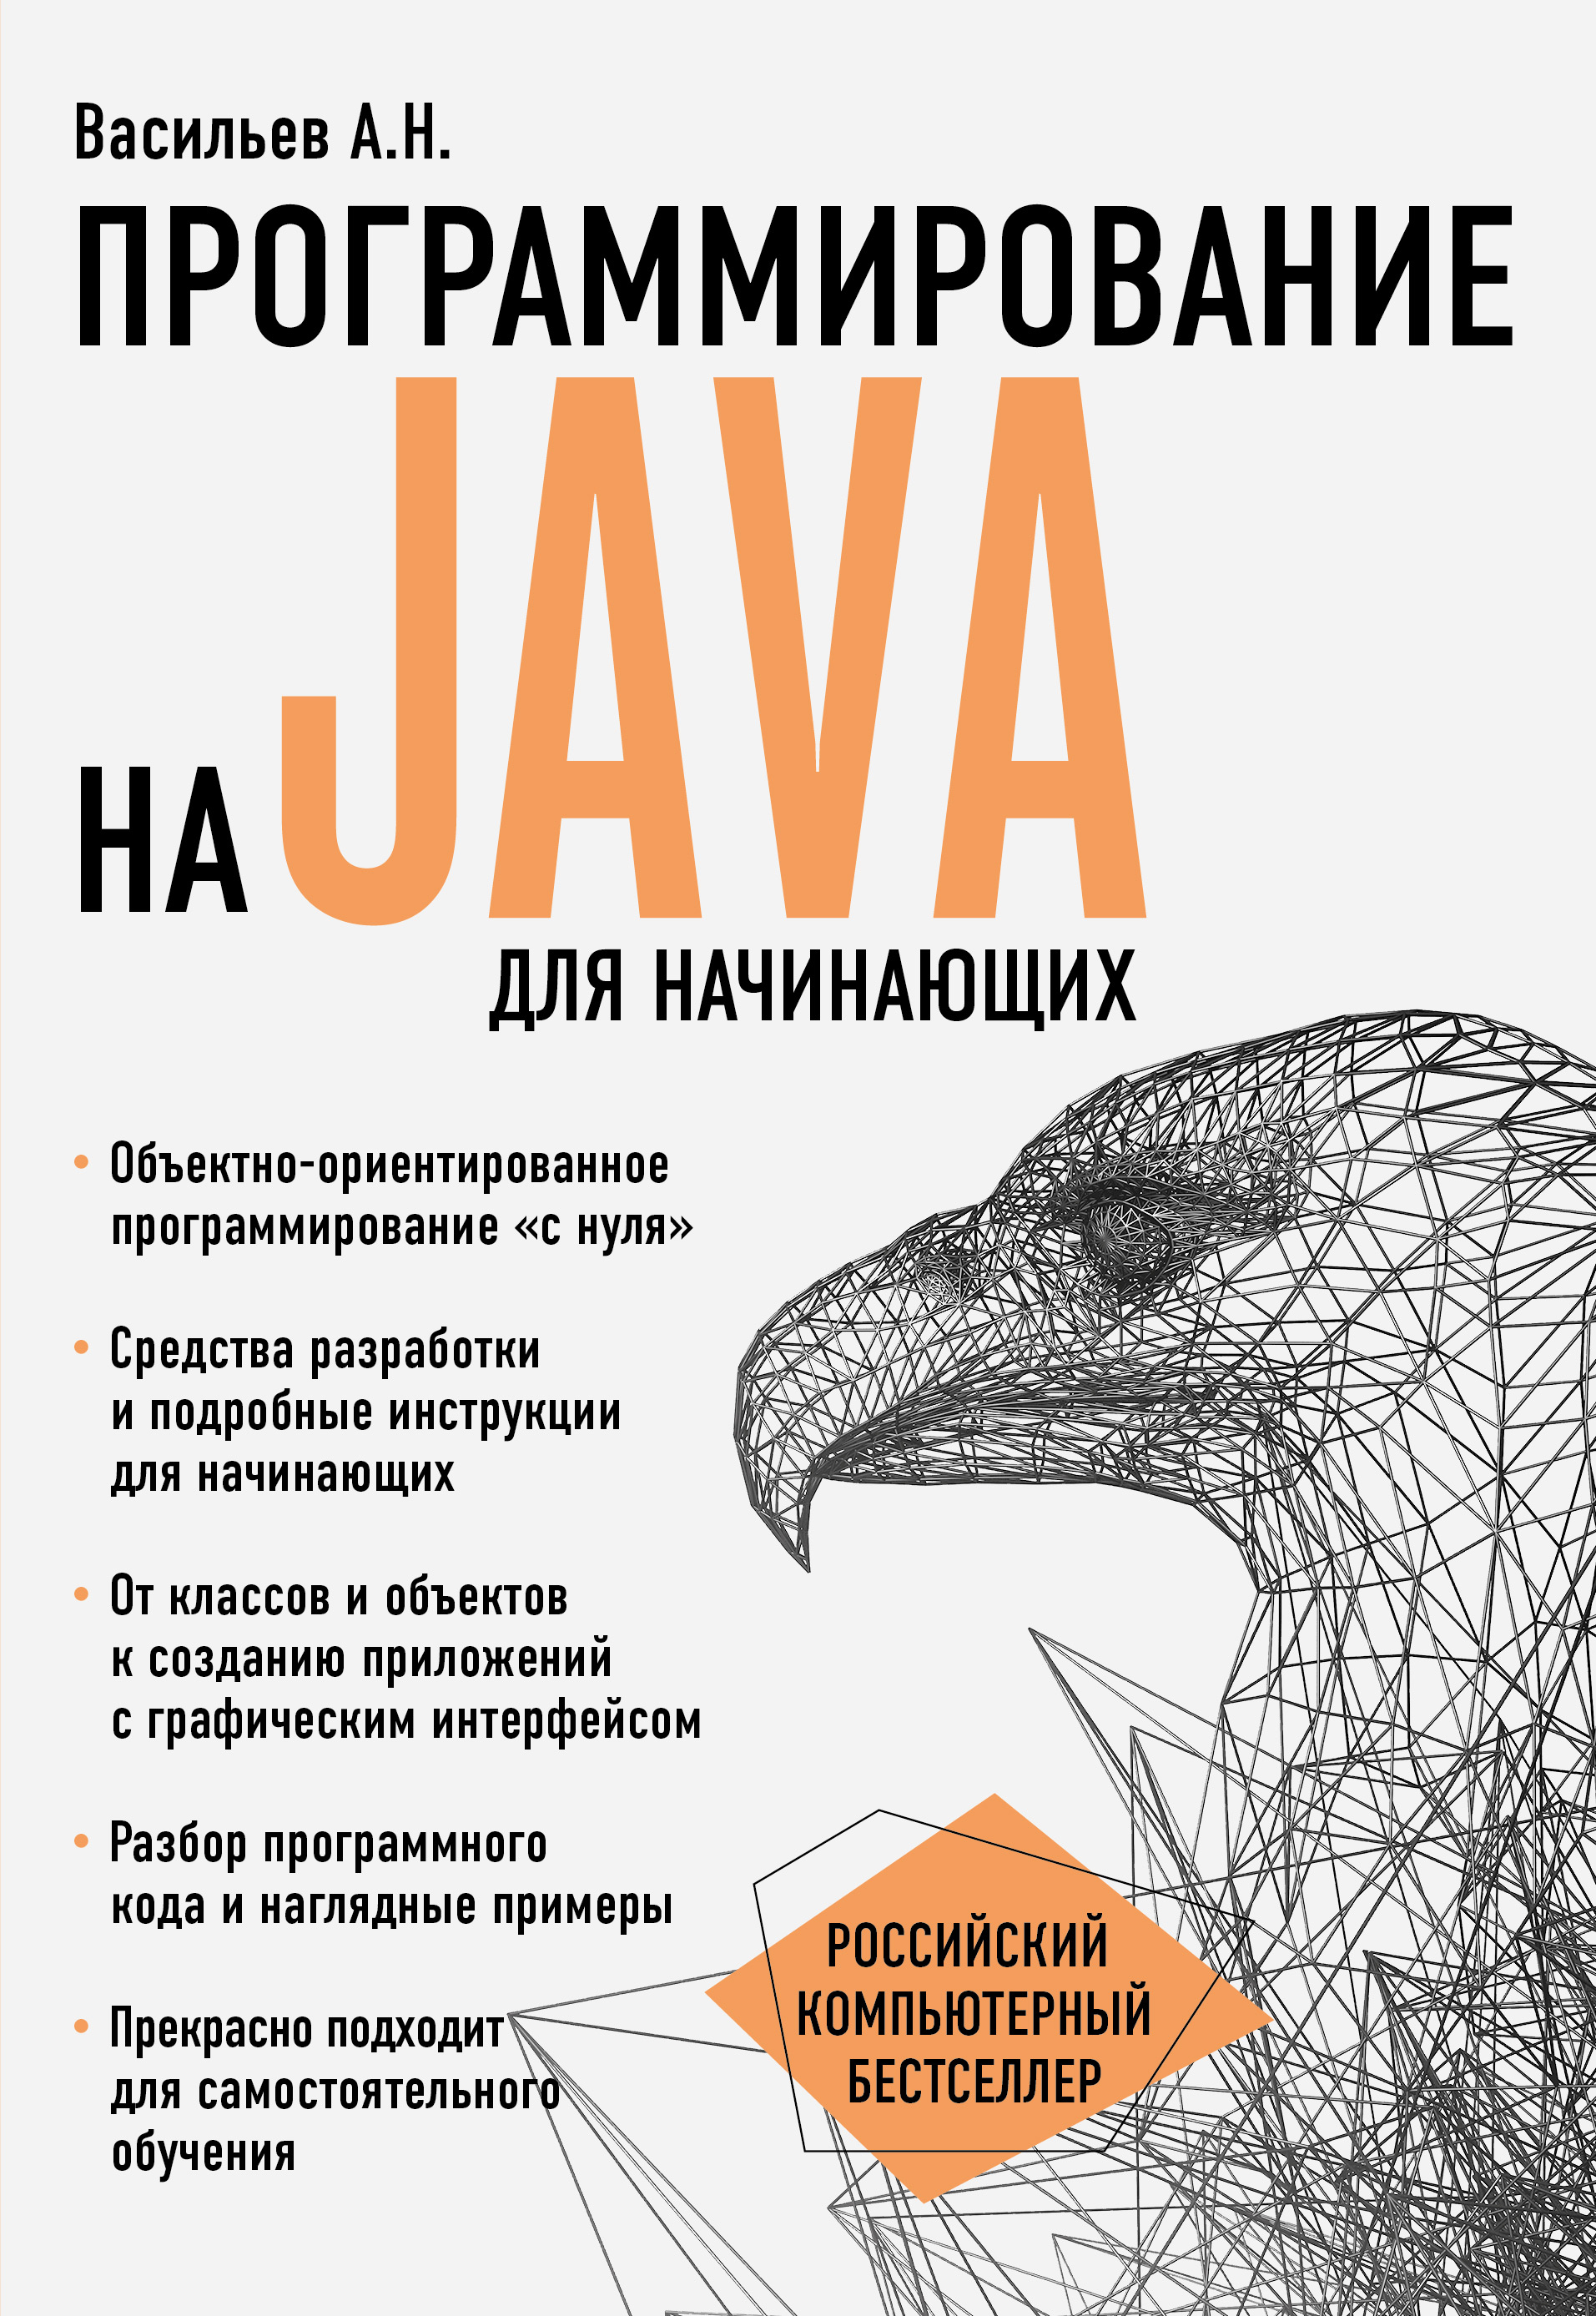 Книга Российский компьютерный бестселлер Программирование на Java для начинающих созданная Алексей Васильев может относится к жанру программирование, руководства. Стоимость электронной книги Программирование на Java для начинающих с идентификатором 48793435 составляет 529.00 руб.